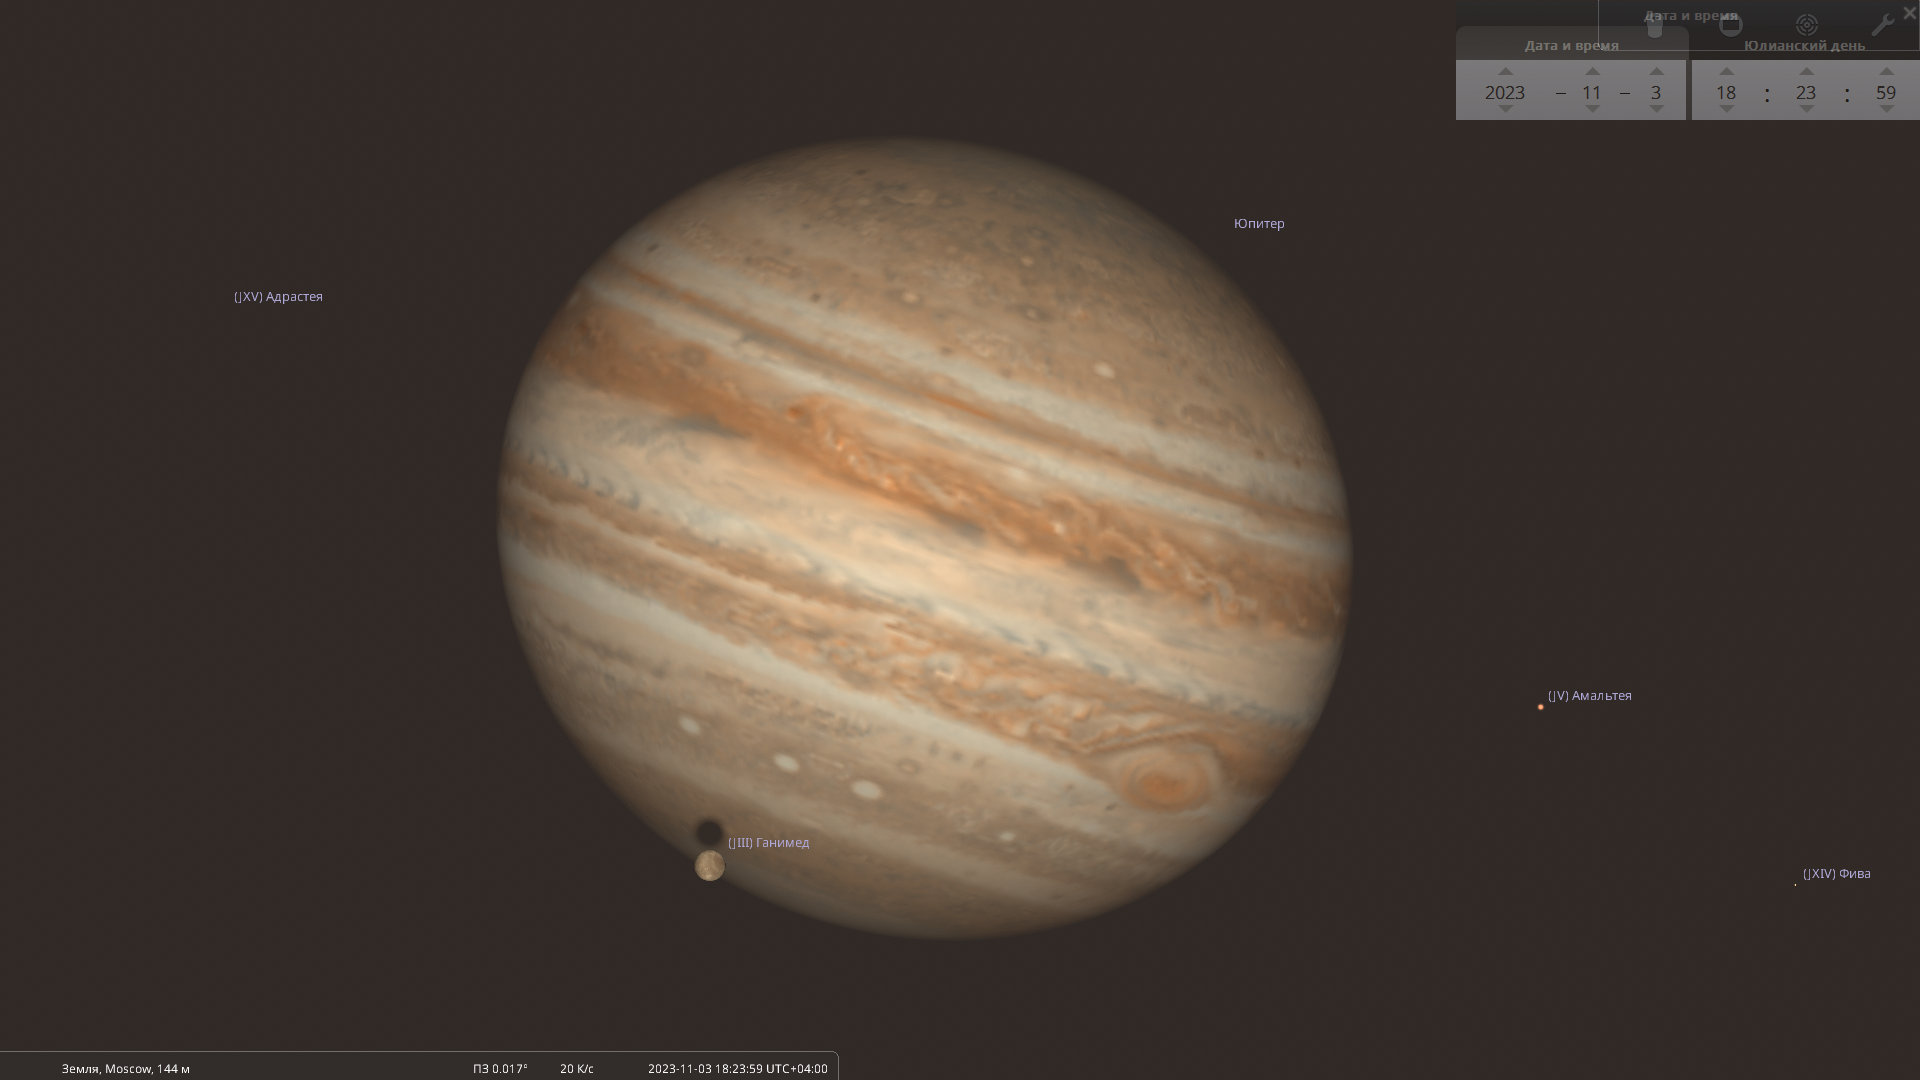 Прохождение Ганимеда перед Юпитером (и тени спутника по диску Юпитера) вечером 3 ноября 2023 года  